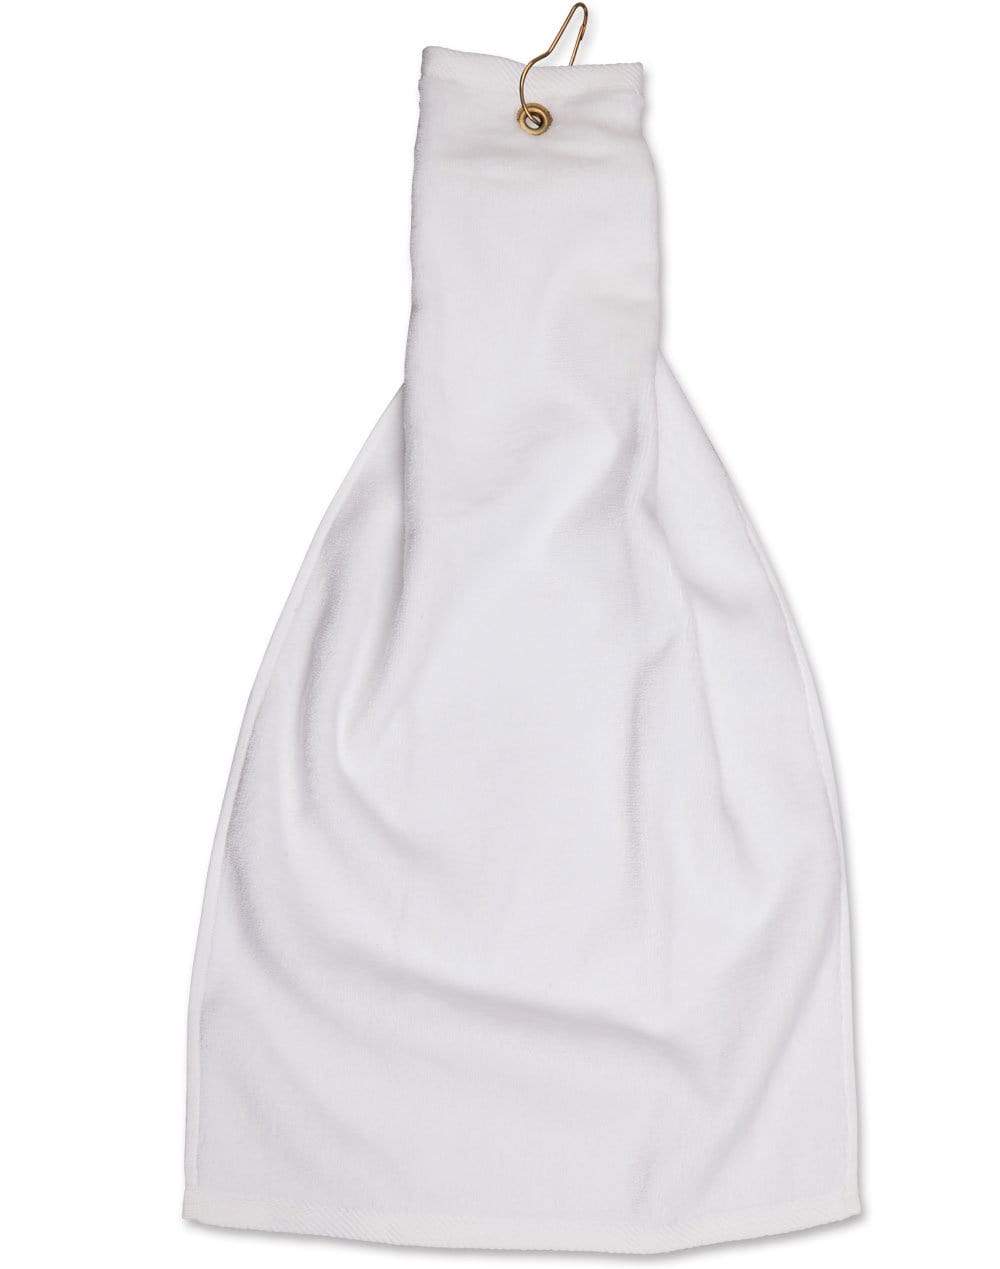 Golf Towel With Ring & Hook TW01A Work Wear Australian Industrial Wear 38 x 65 cm White 